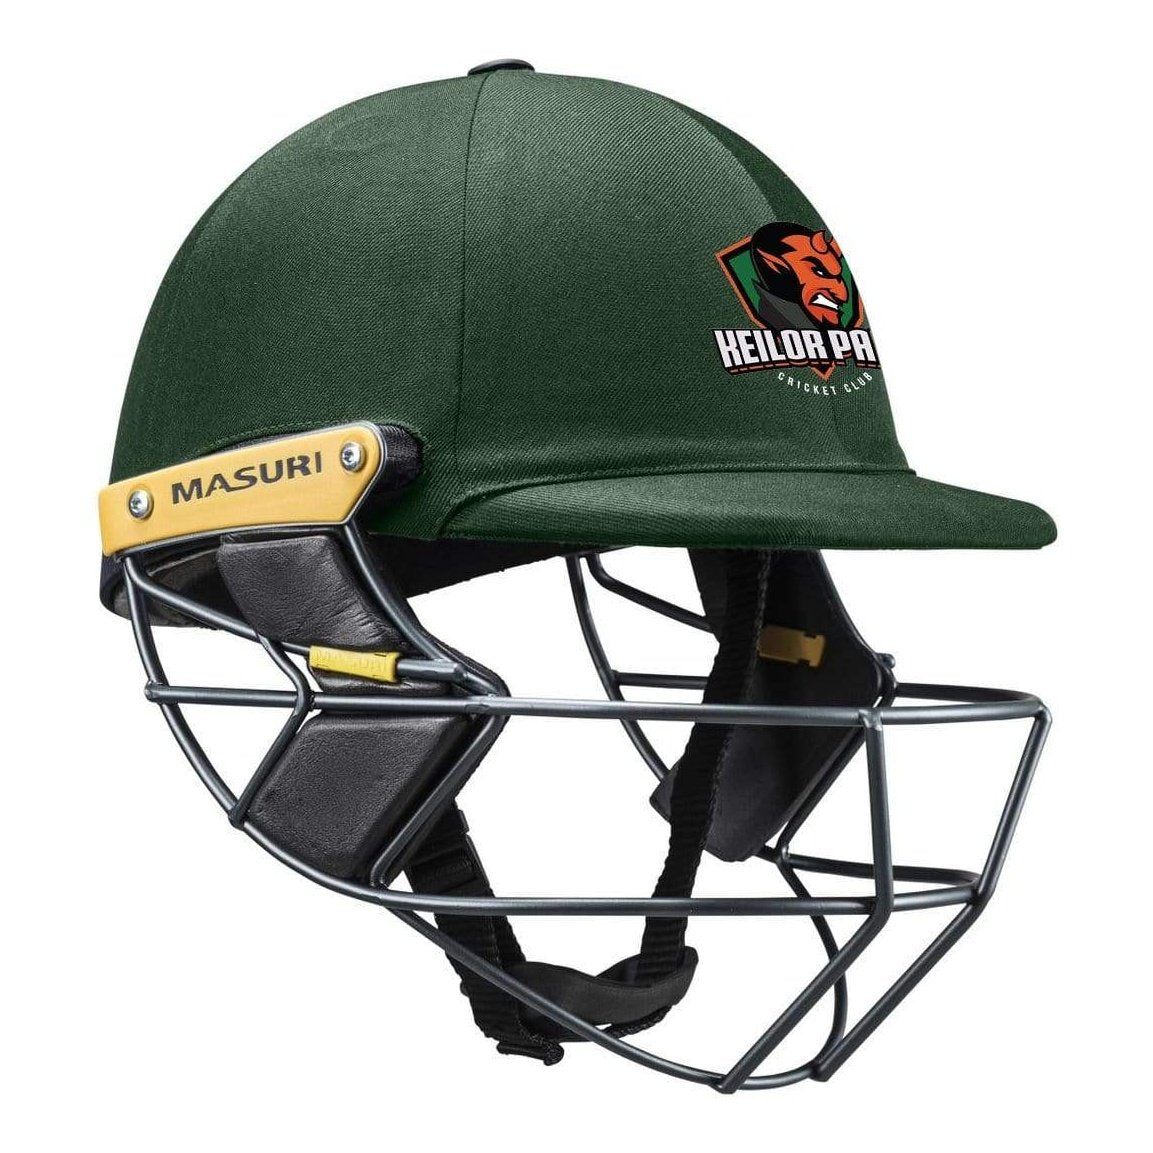 Masuri Club Helmet Keilor Park Cricket Club Helmet